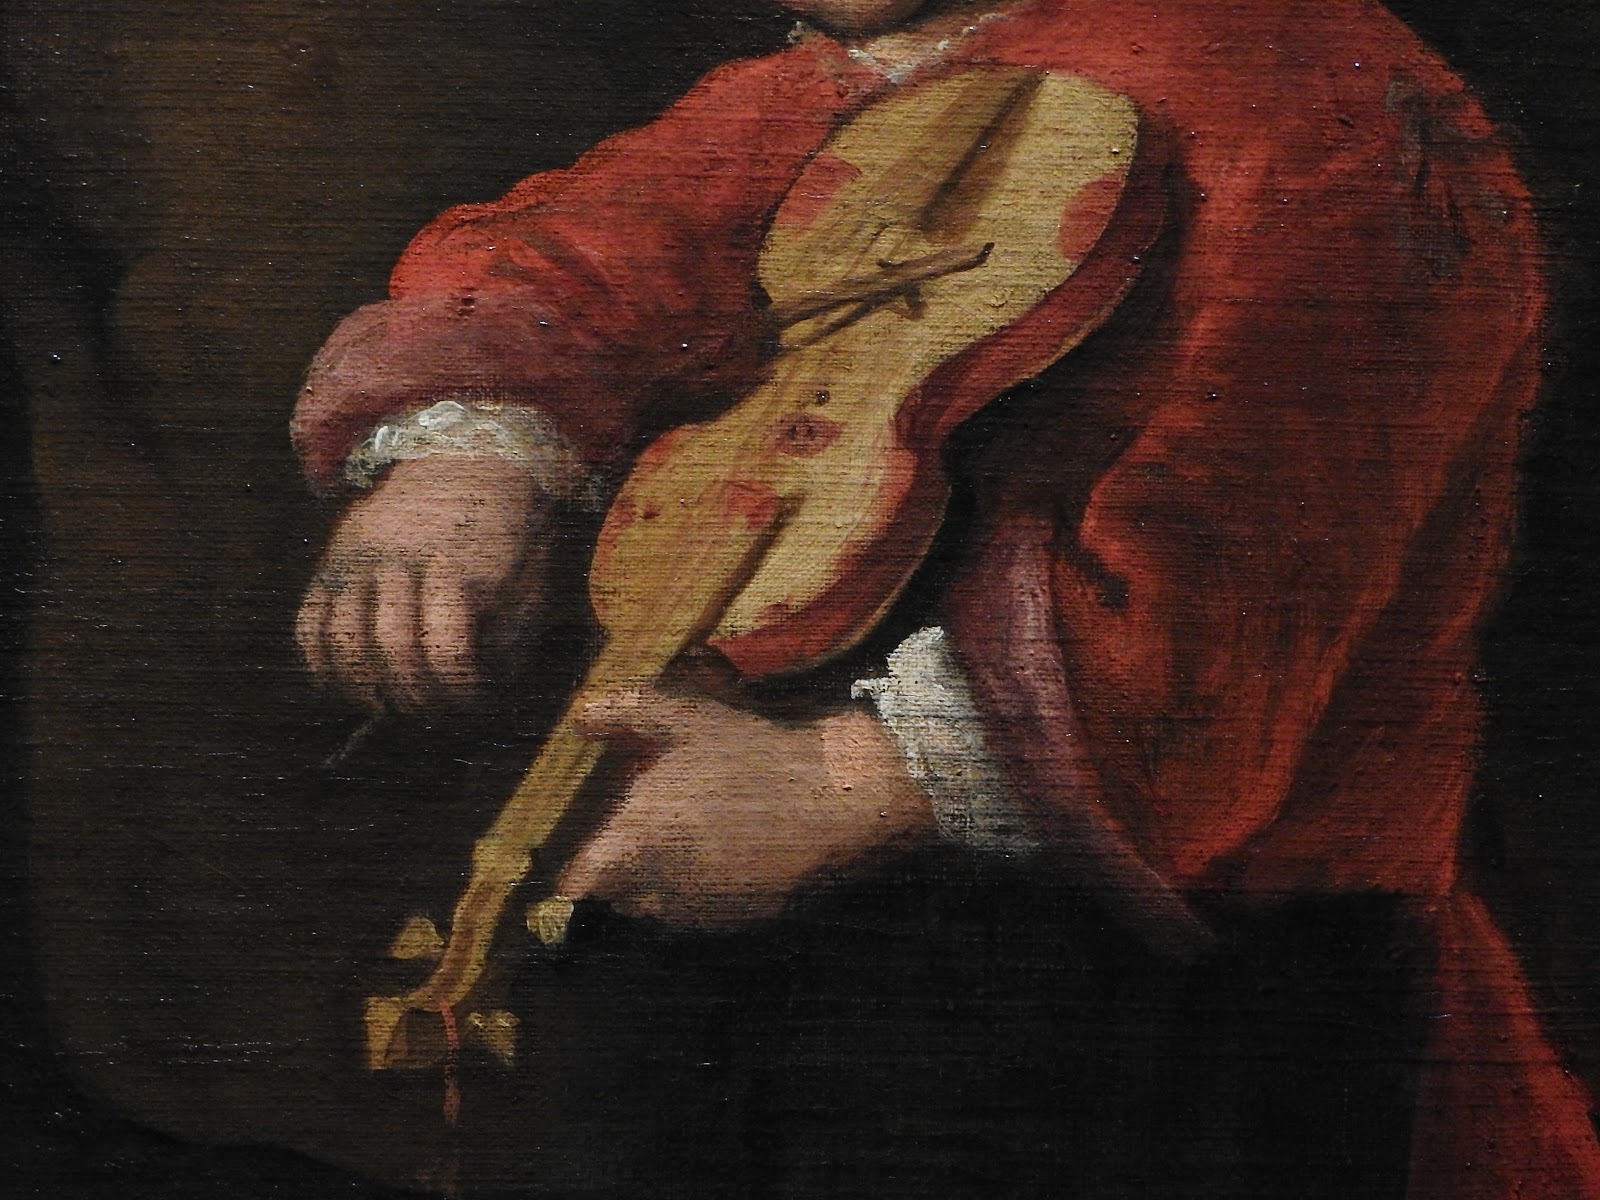 Jan+Havicksz+Steen-1626-1679 (35).jpg